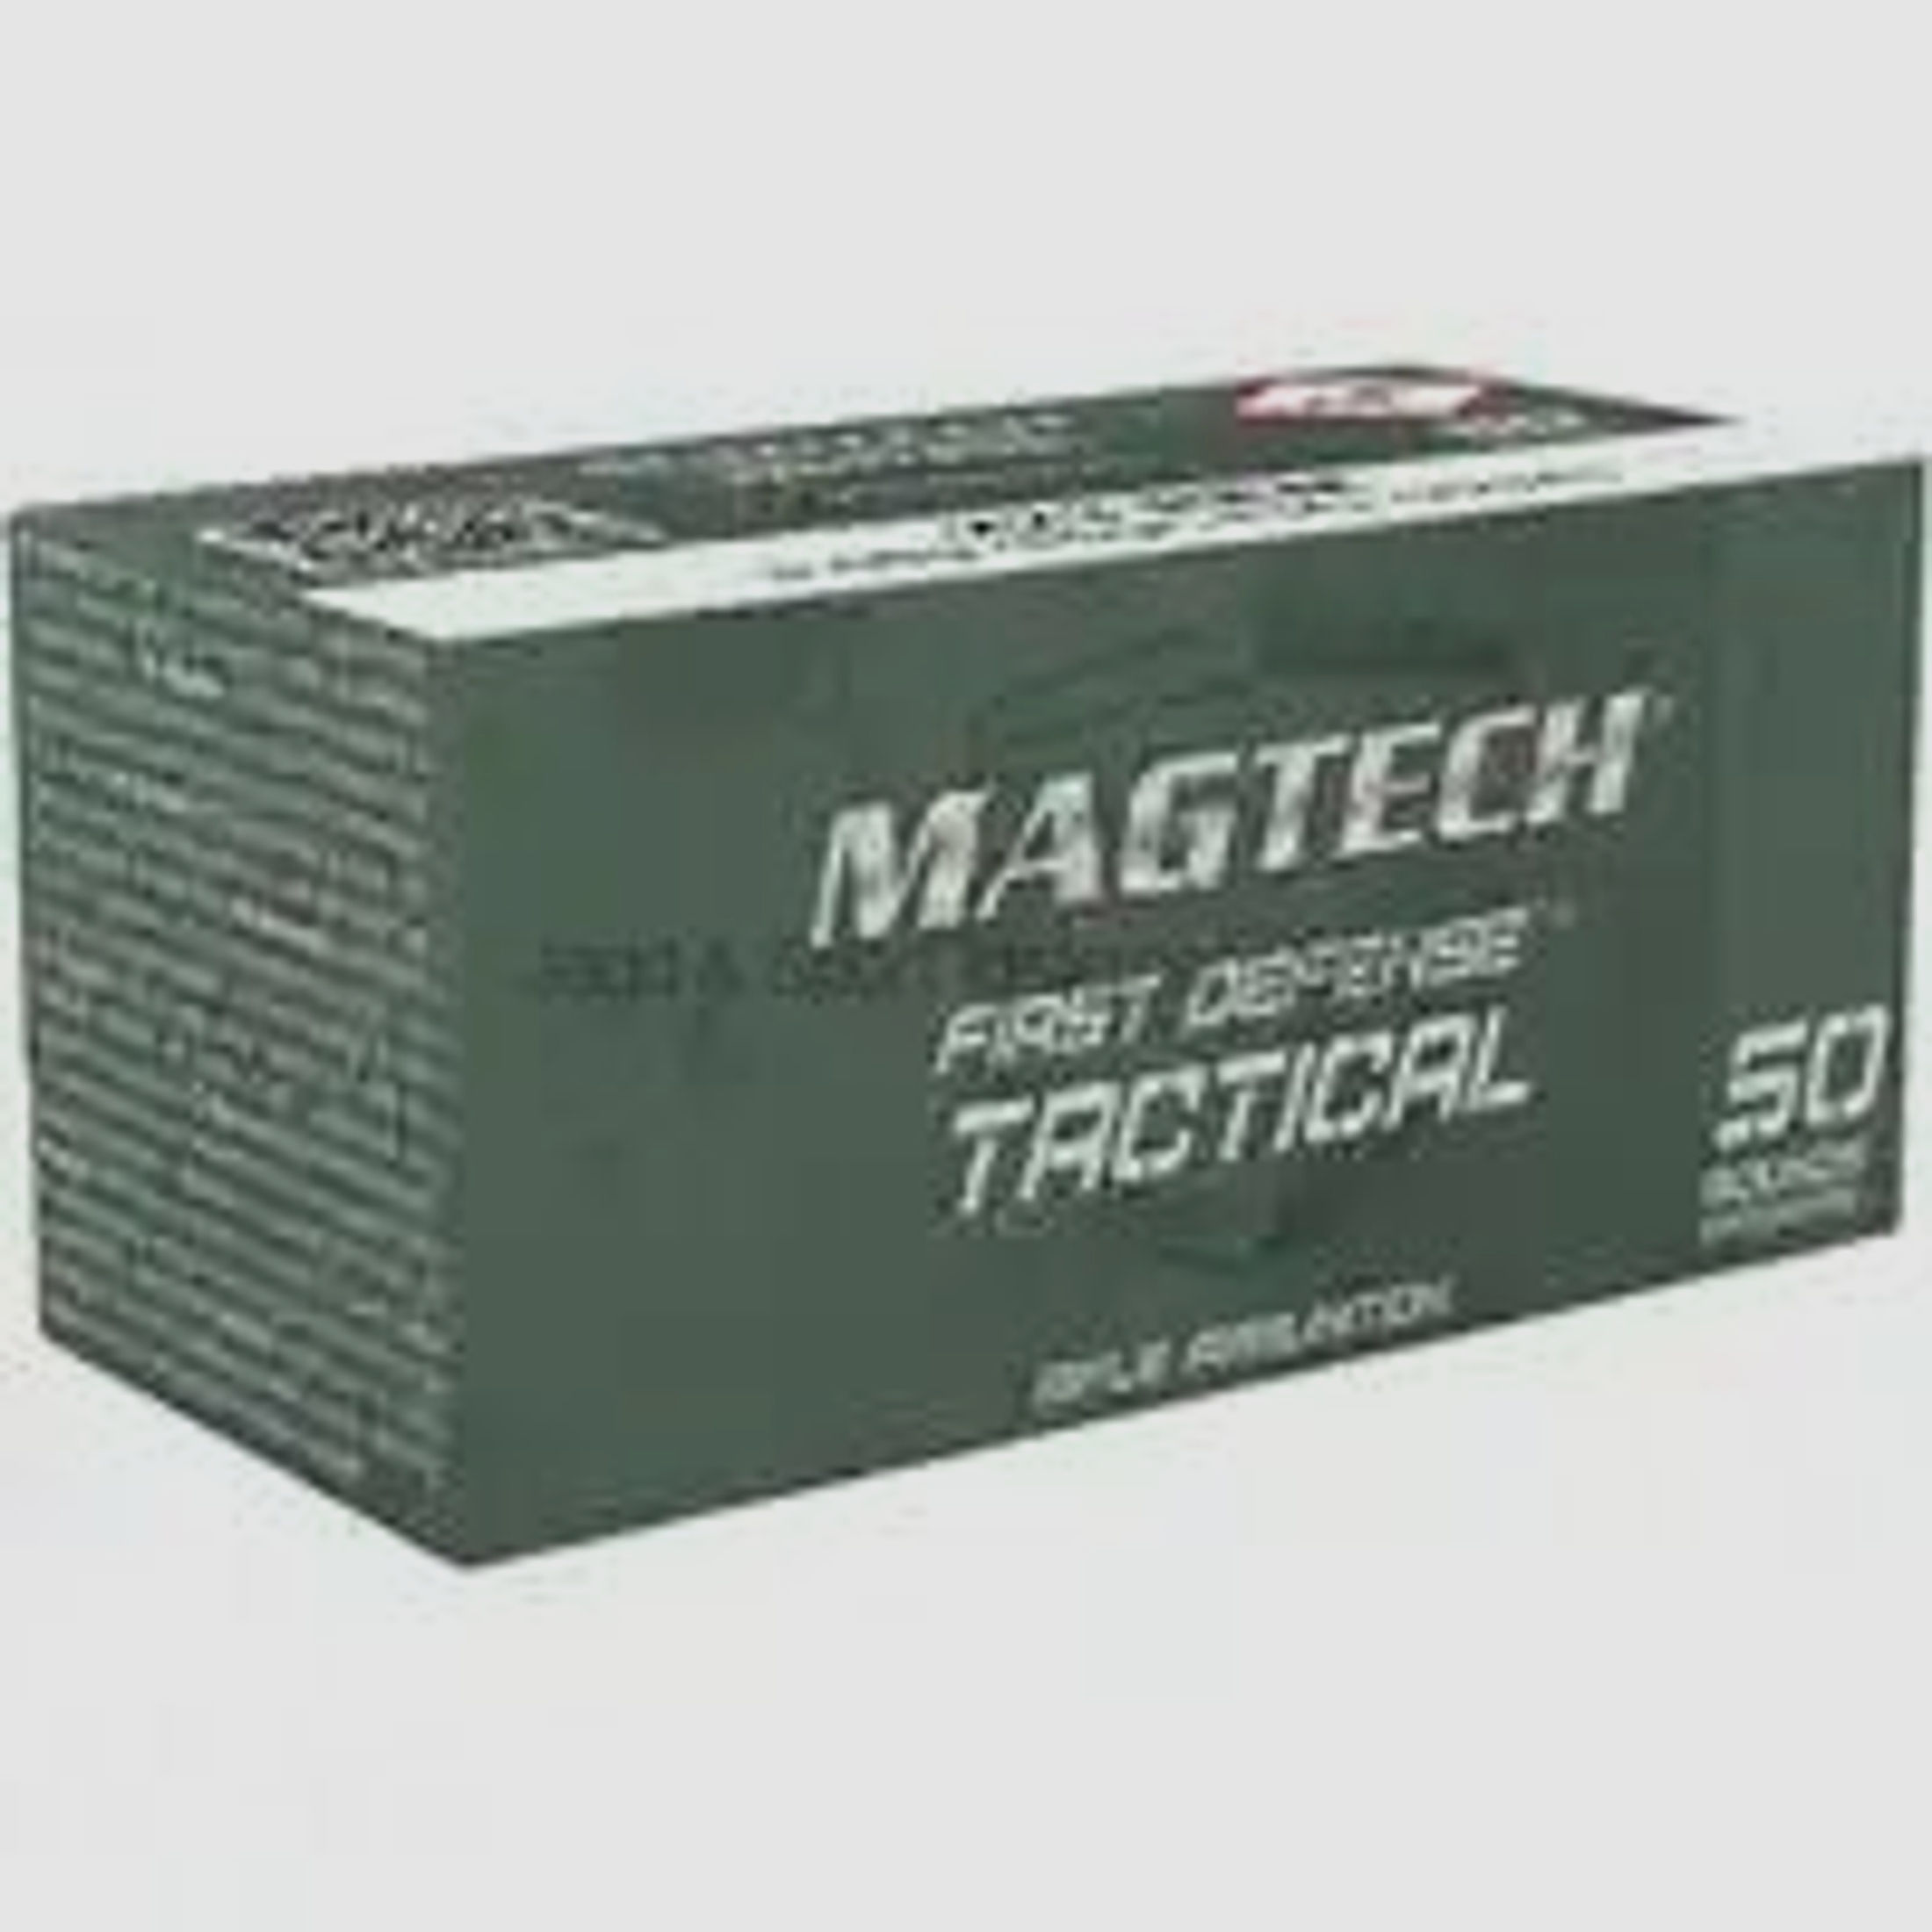 Magtech	 "First Defense Tactical", 55grs, FMJ-BT